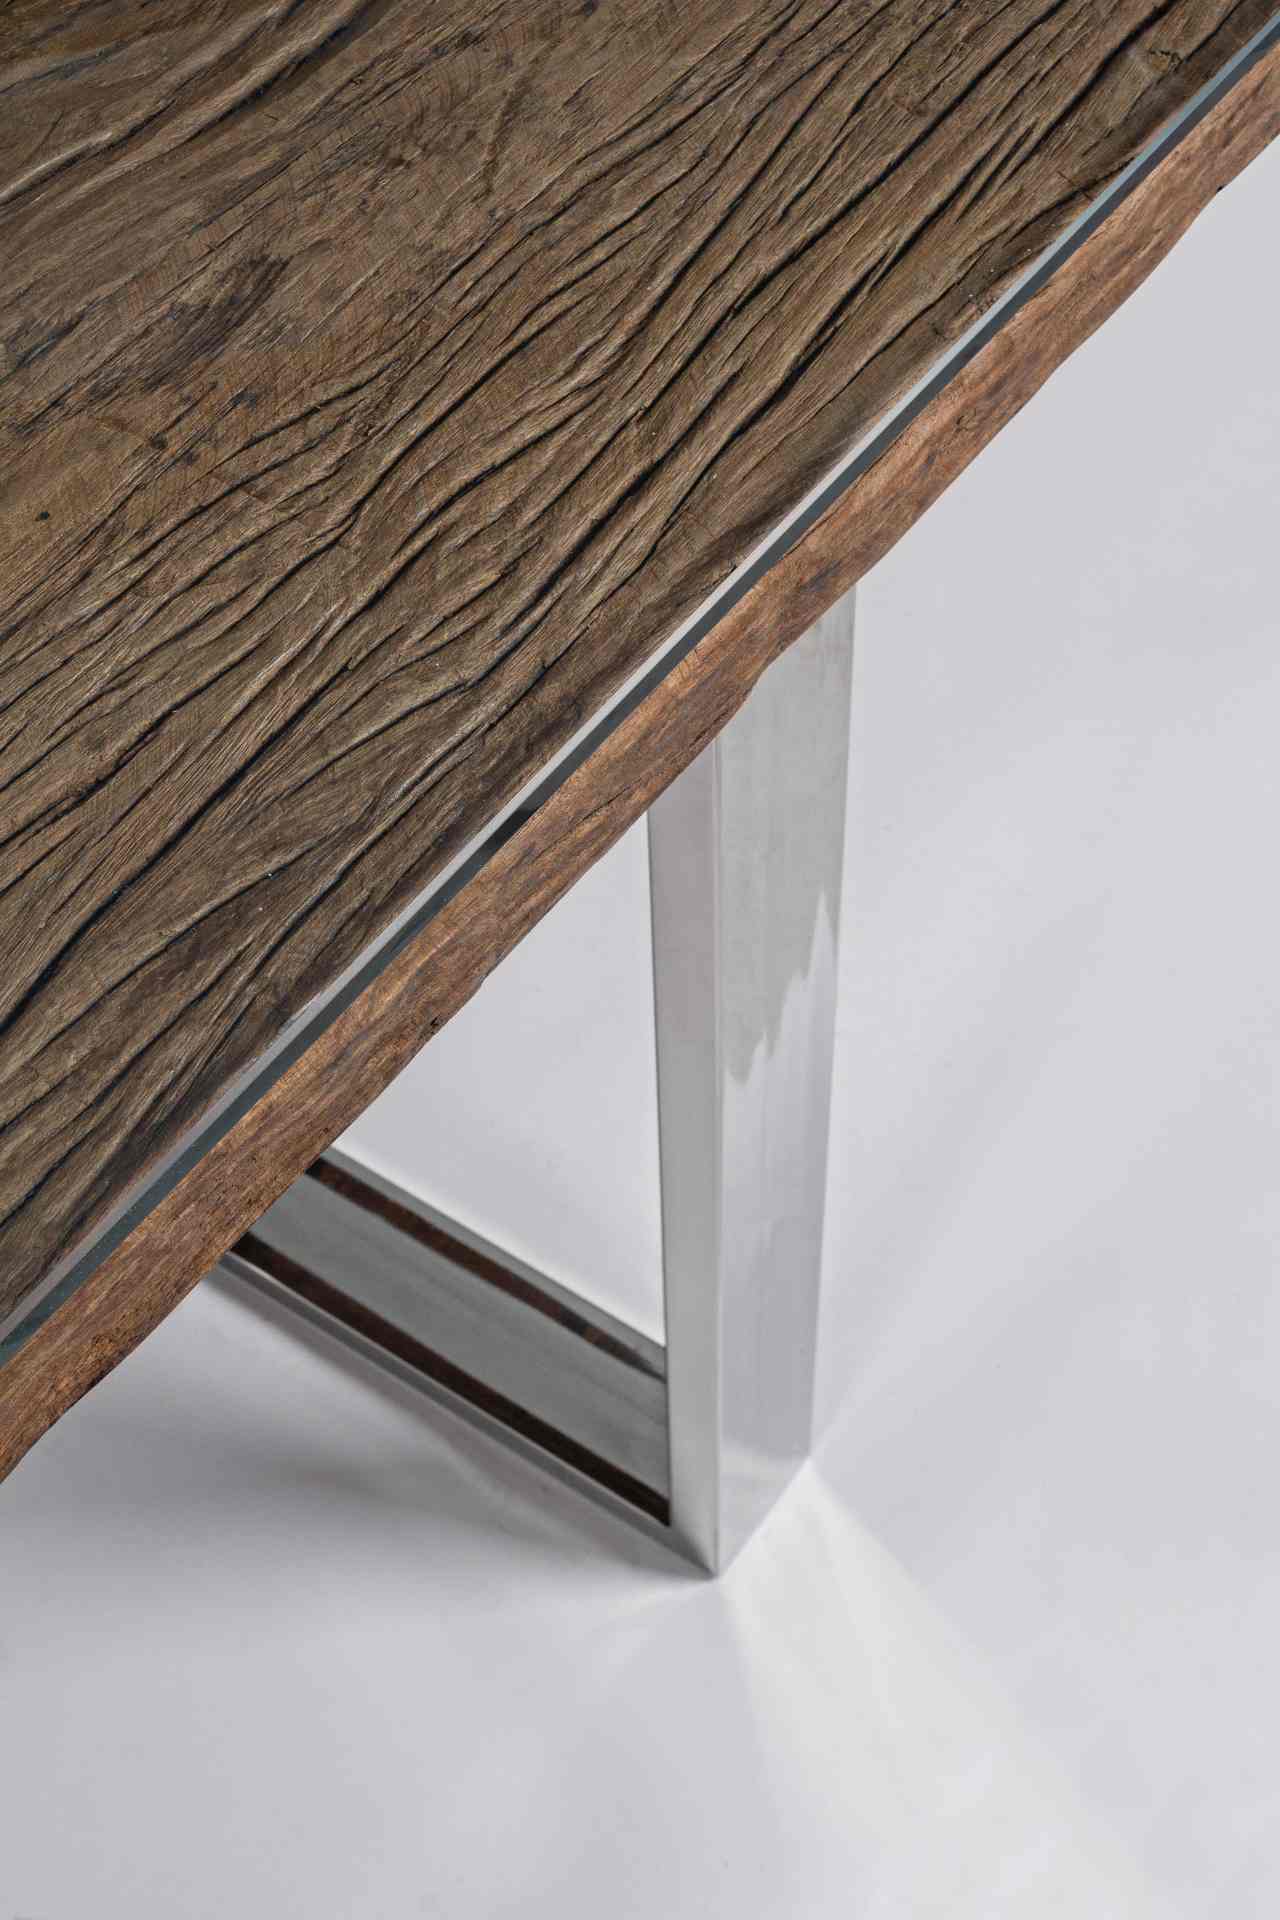 Der Esstisch Stanton überzeugt mit seinem moderndem Design gefertigt wurde er aus recyceltem Holz, welches einen natürlichen Farbton besitzt. Das Gestell des Tisches ist aus Metall und ist in einer silbernen Farbe. Der Tisch besitzt eine Breite von 180 cm